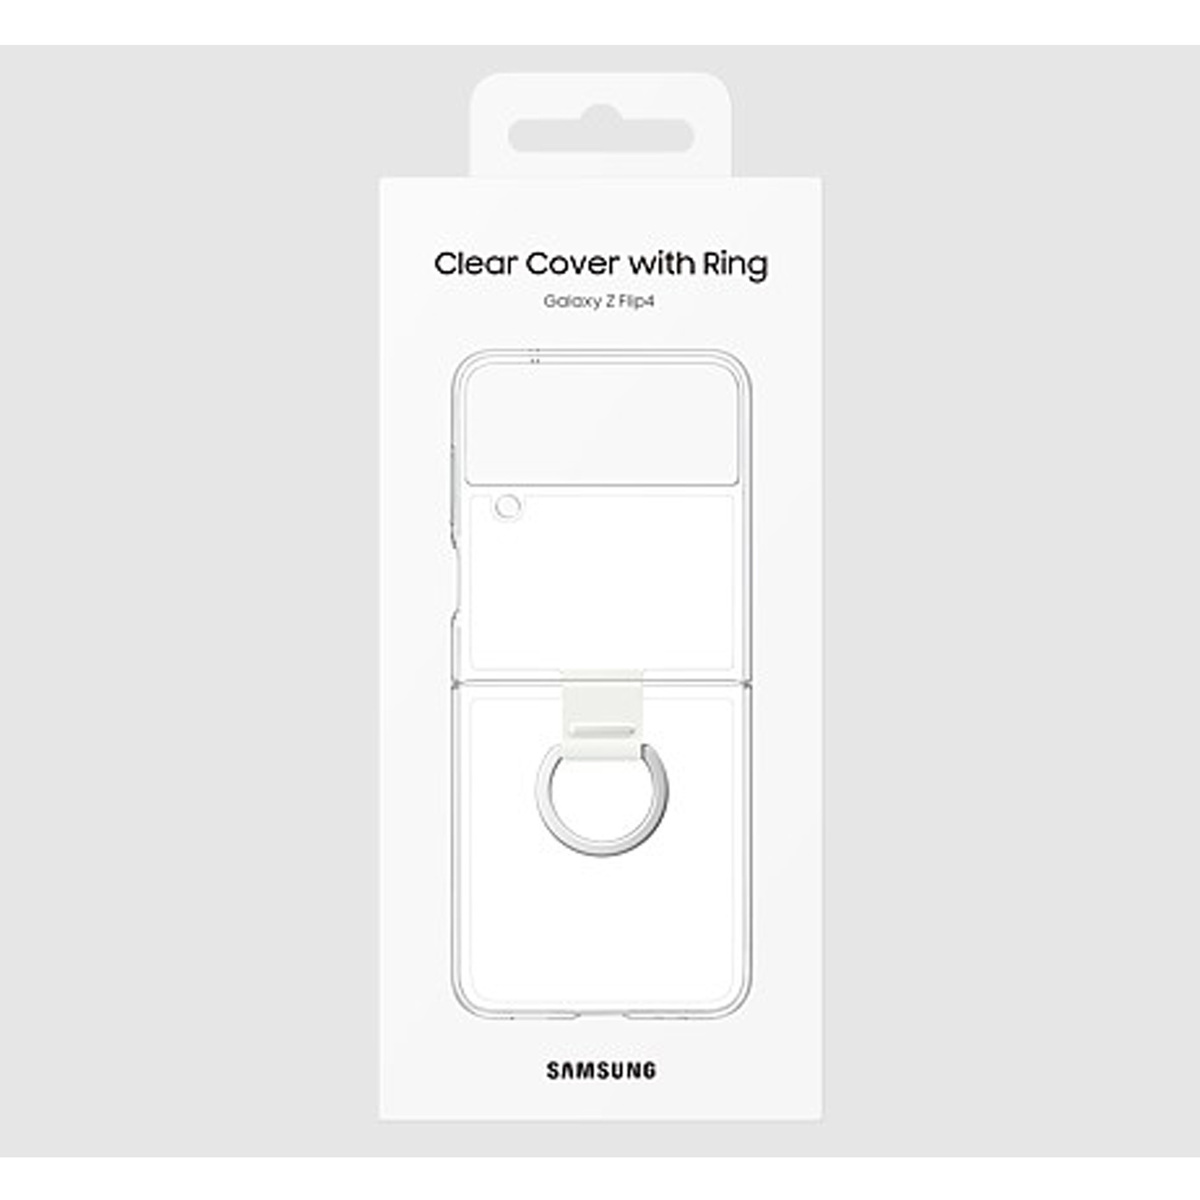 سامسونج غطاء هاتف جالكسي زد فليب 4 مع حلقة ، شفاف ، EF-OF721CTEGWW